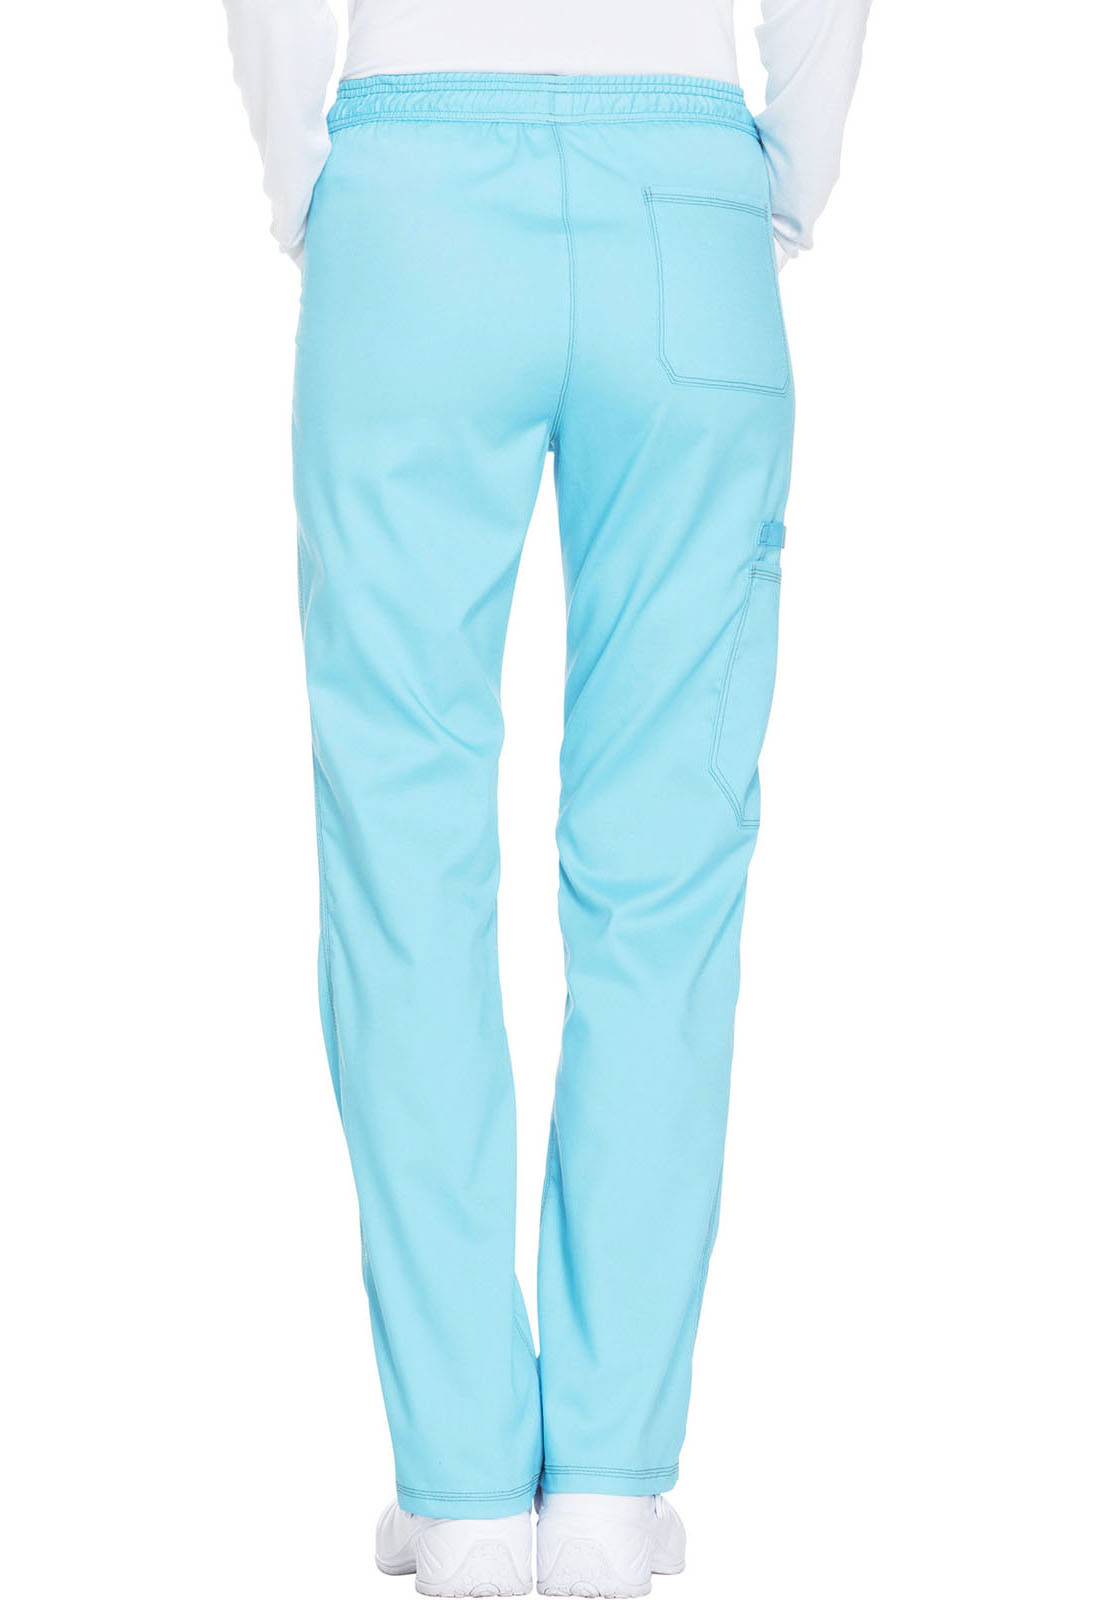 Turquoise Mid Rise Straight Leg Women's Petite Drawstring Pants DK106P